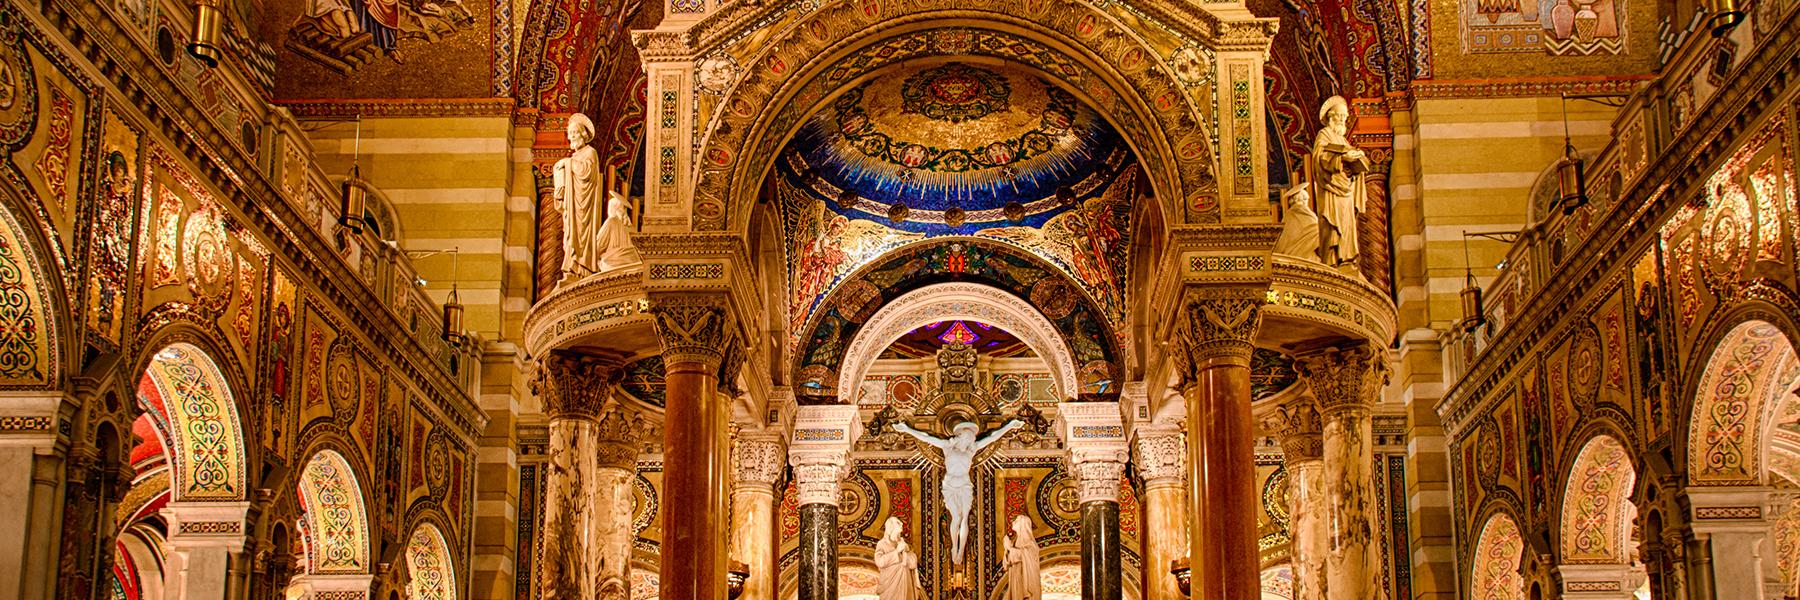 大教堂大教堂. 路易斯拥有世界上最大的马赛克艺术收藏之一.